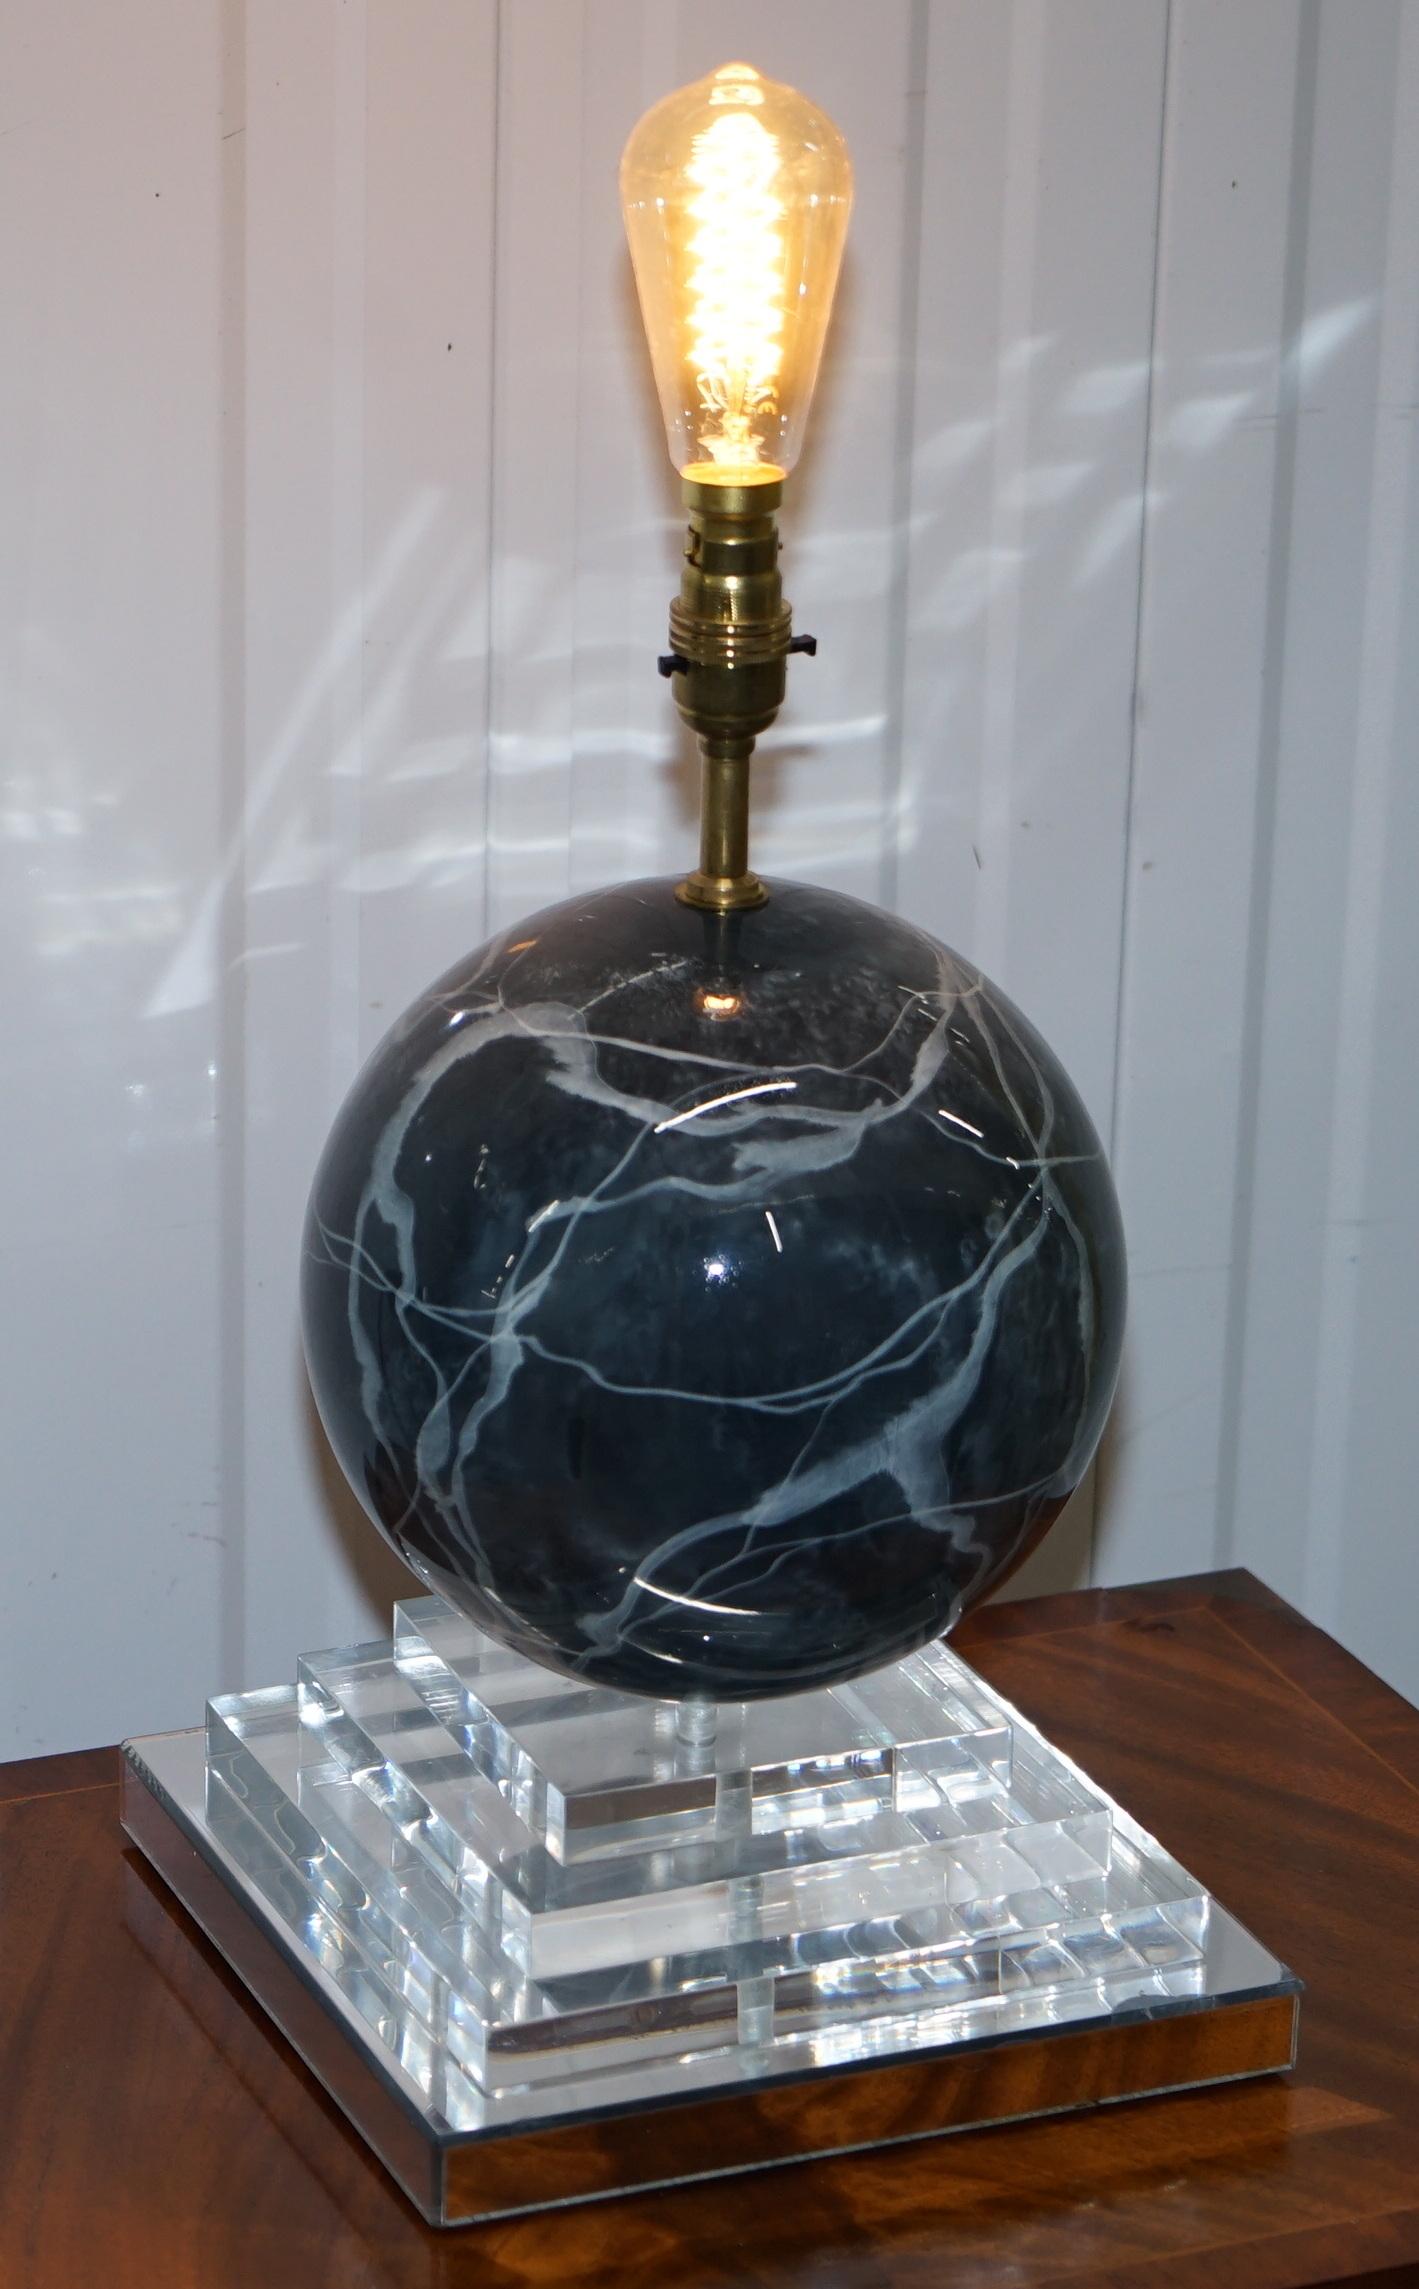 Nous sommes ravis d'offrir à la vente cette belle lampe ronde vintage des années 1960 en finition marbre sur une base en plexiglas à quatre niveaux avec finition miroir

Une très belle lampe de table rare et décorative, je n'en ai jamais vu